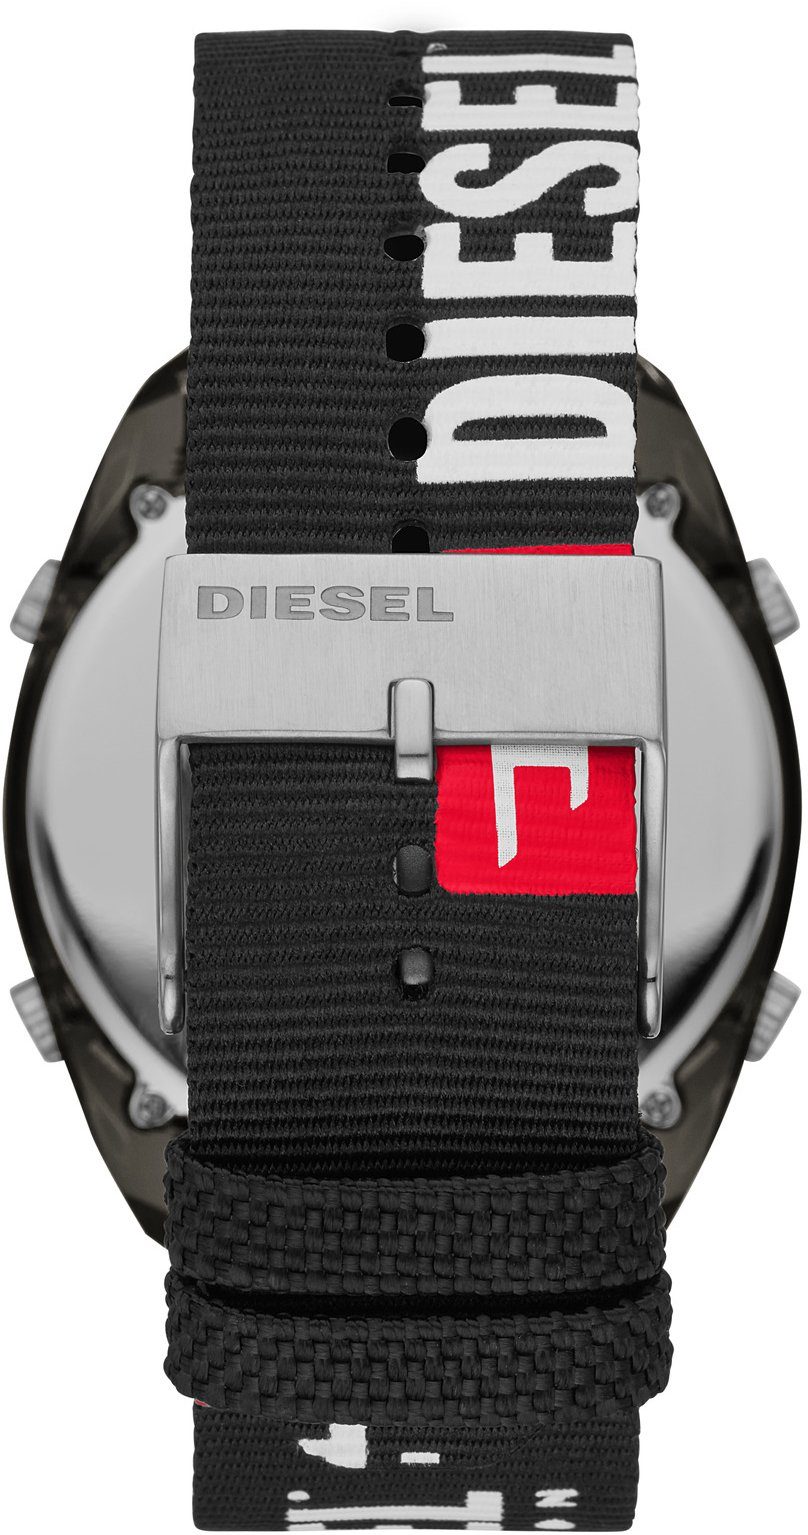 Diesel Digitaluhr CRUSHER, DZ1914